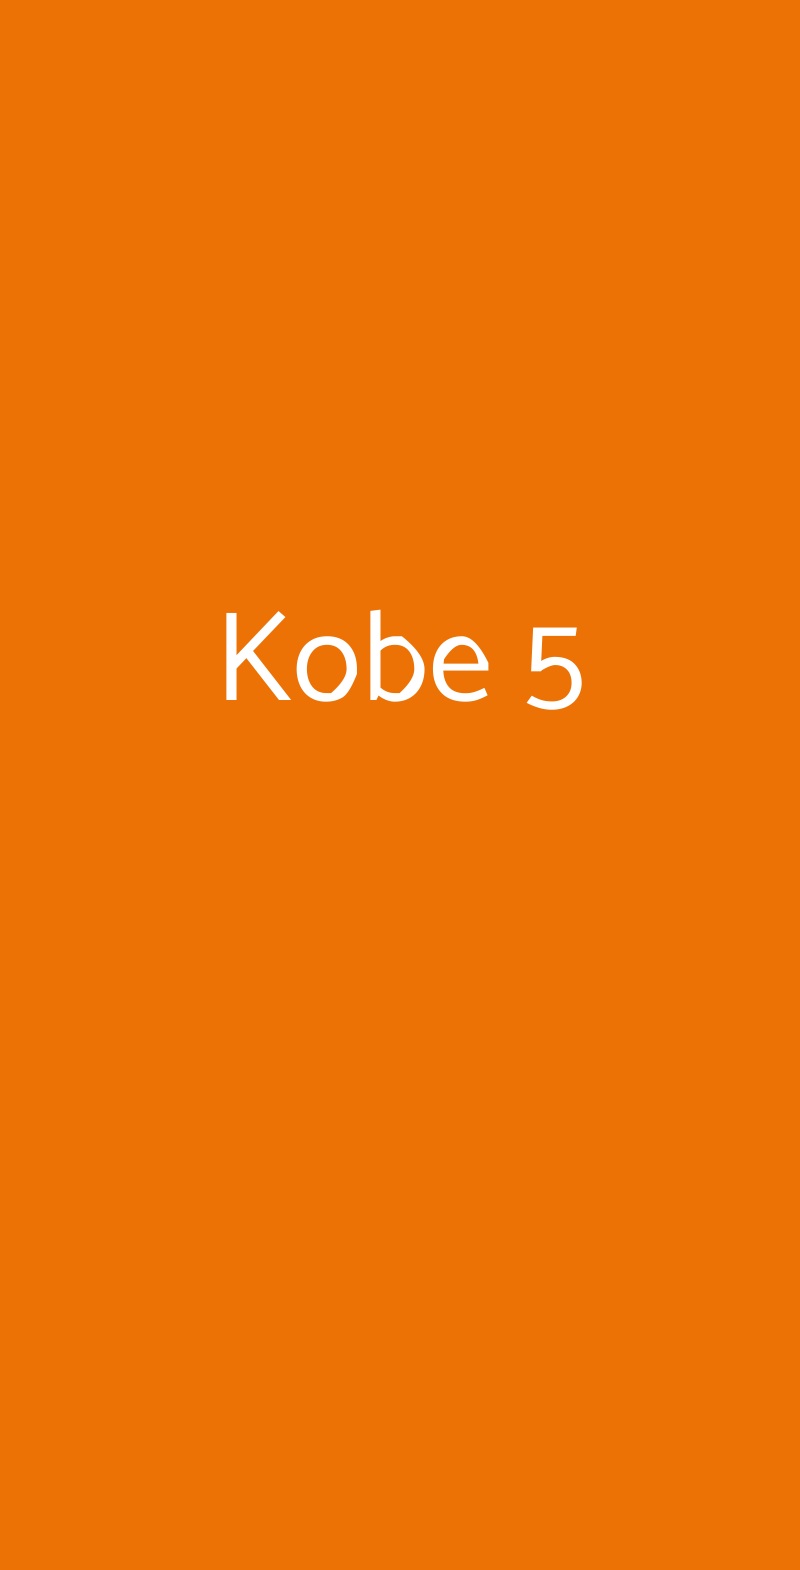 Kobe 5 Milano menù 1 pagina